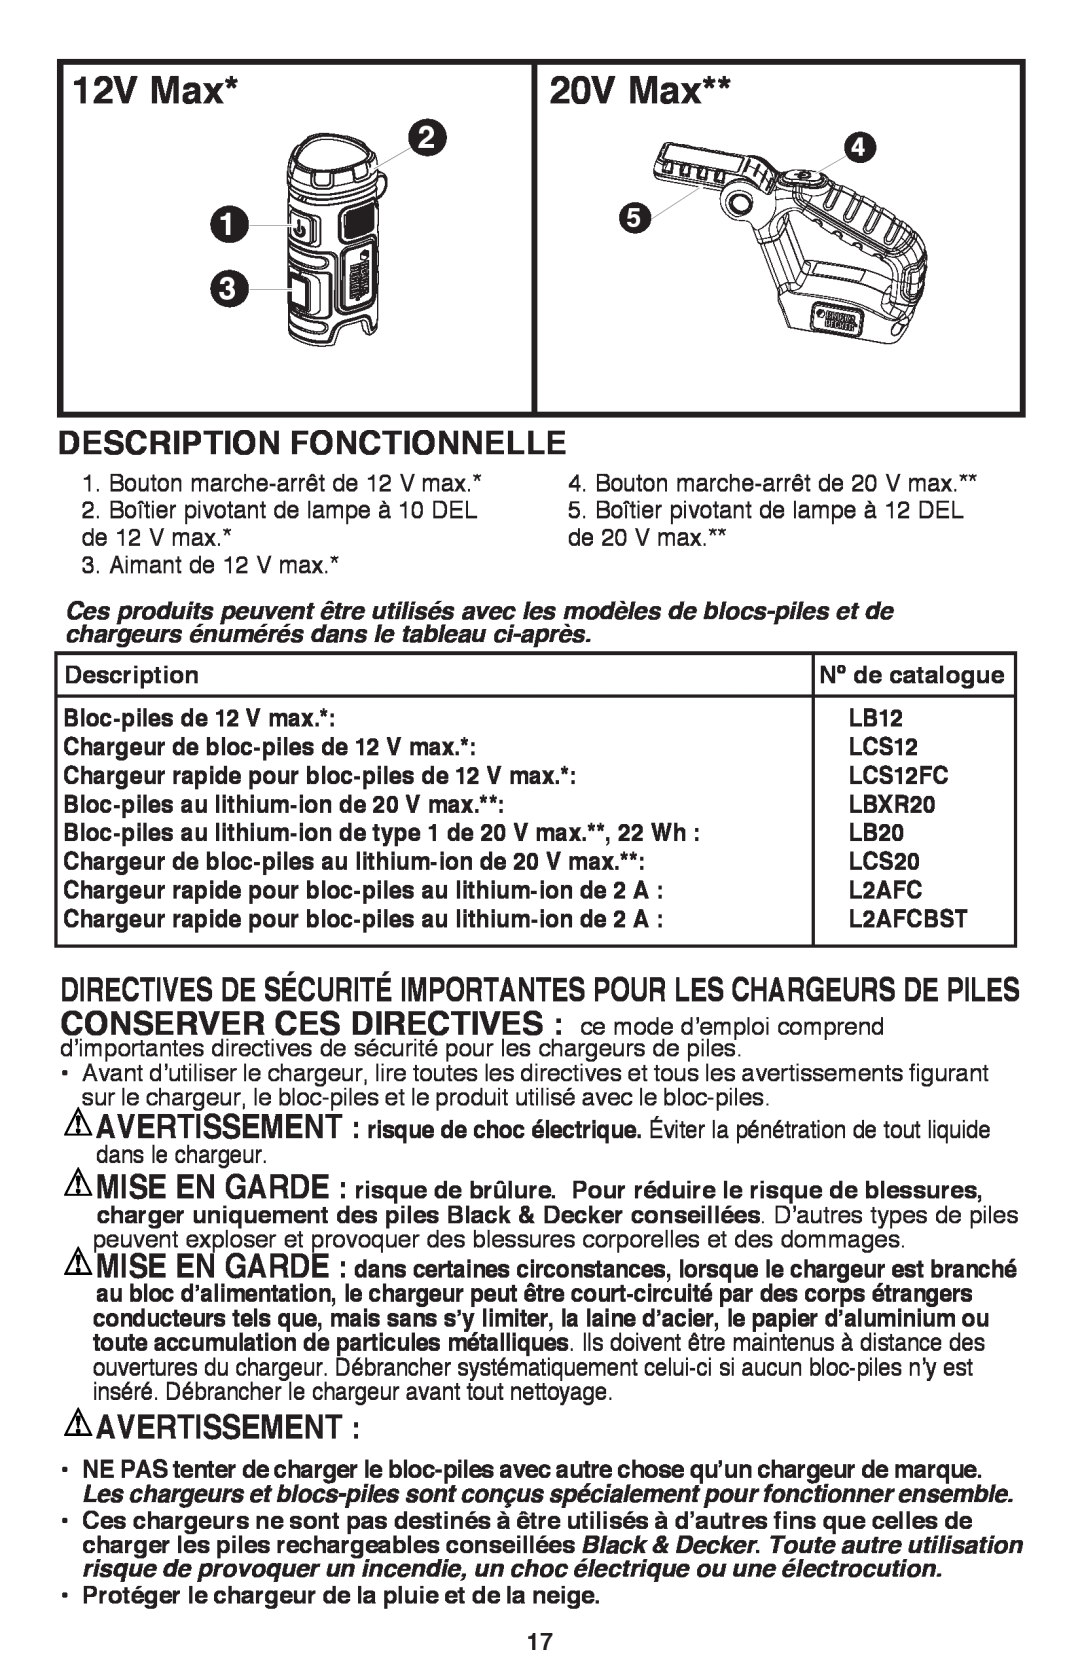 Black & Decker BDCF12, BDCF20 manual Description Fonctionnelle, Avertissement, 12V Max, 20V Max 